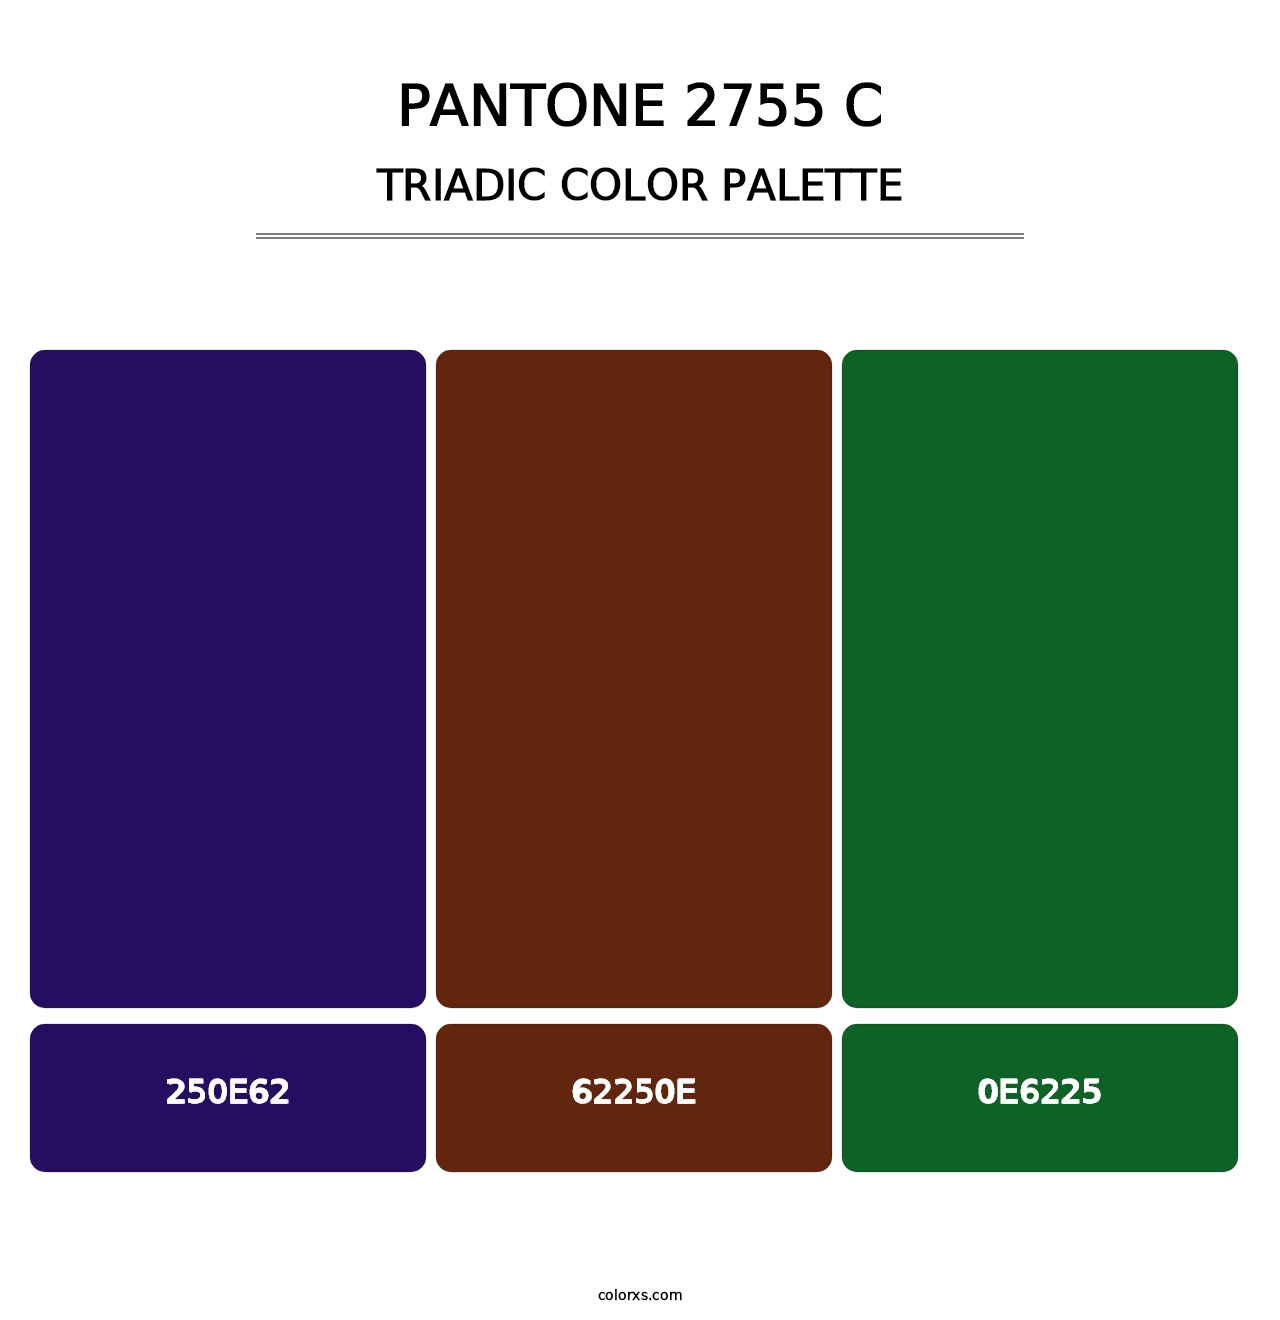 PANTONE 2755 C - Triadic Color Palette